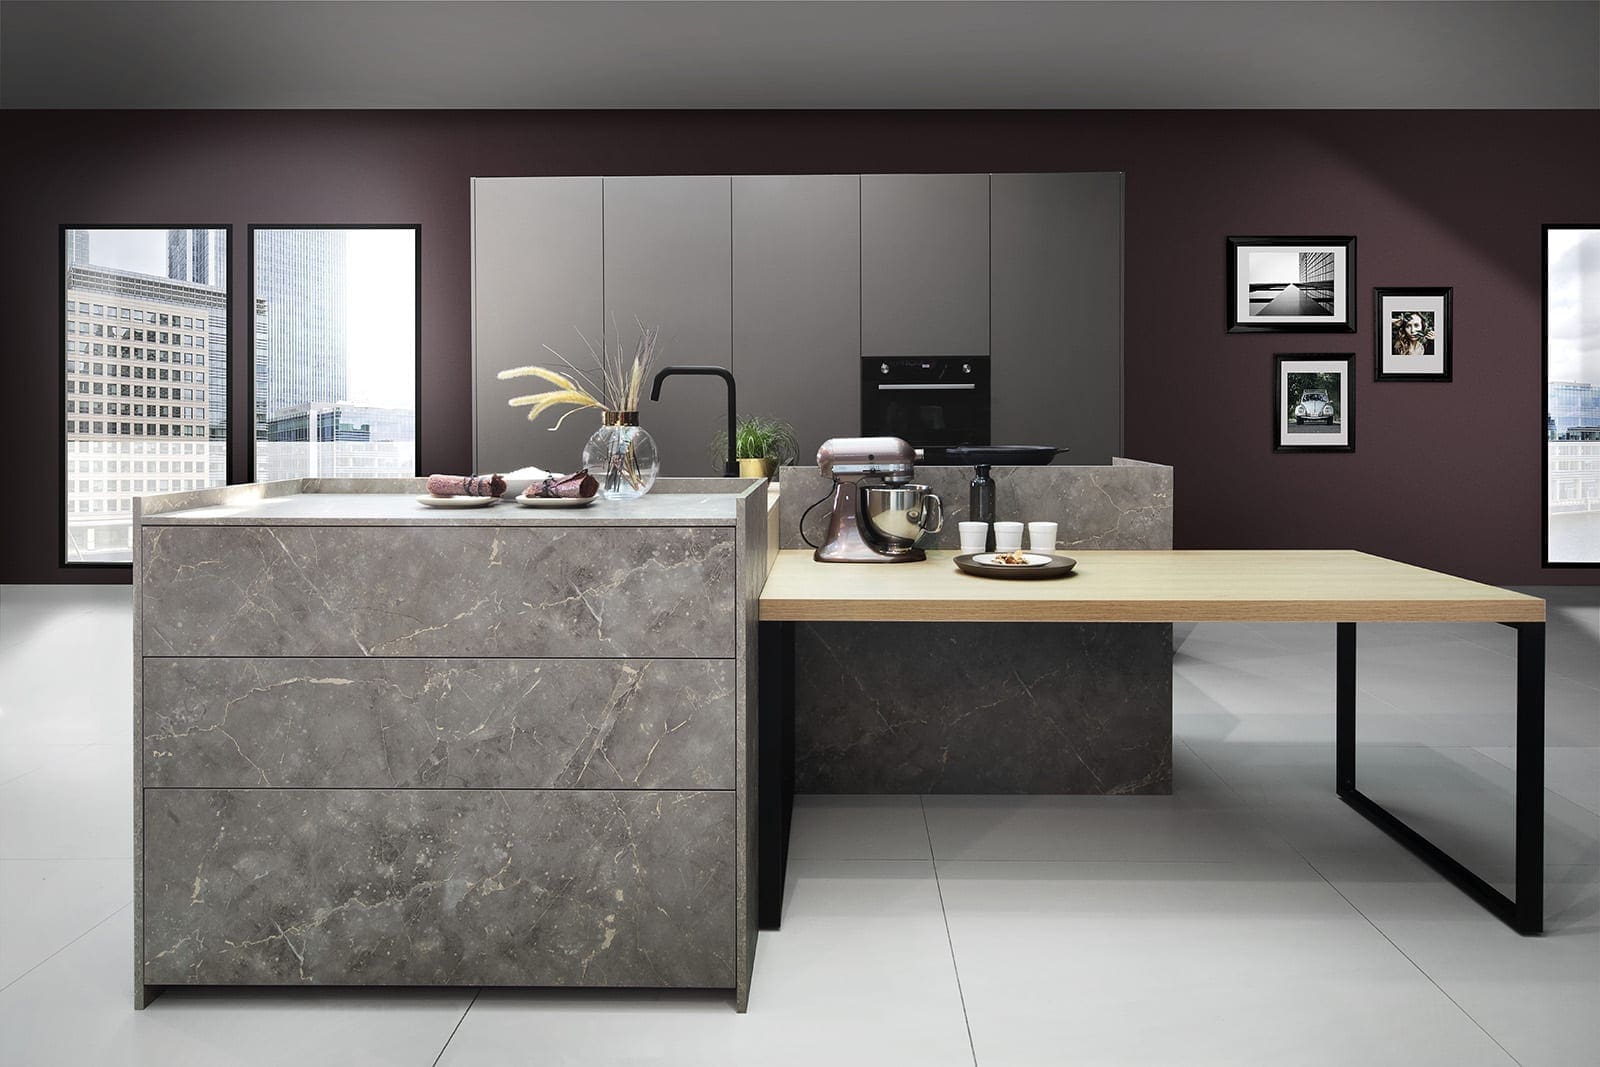 Rotpunkt Ceramic Kitchen 1 | John Willox Kitchen Design, Ellon